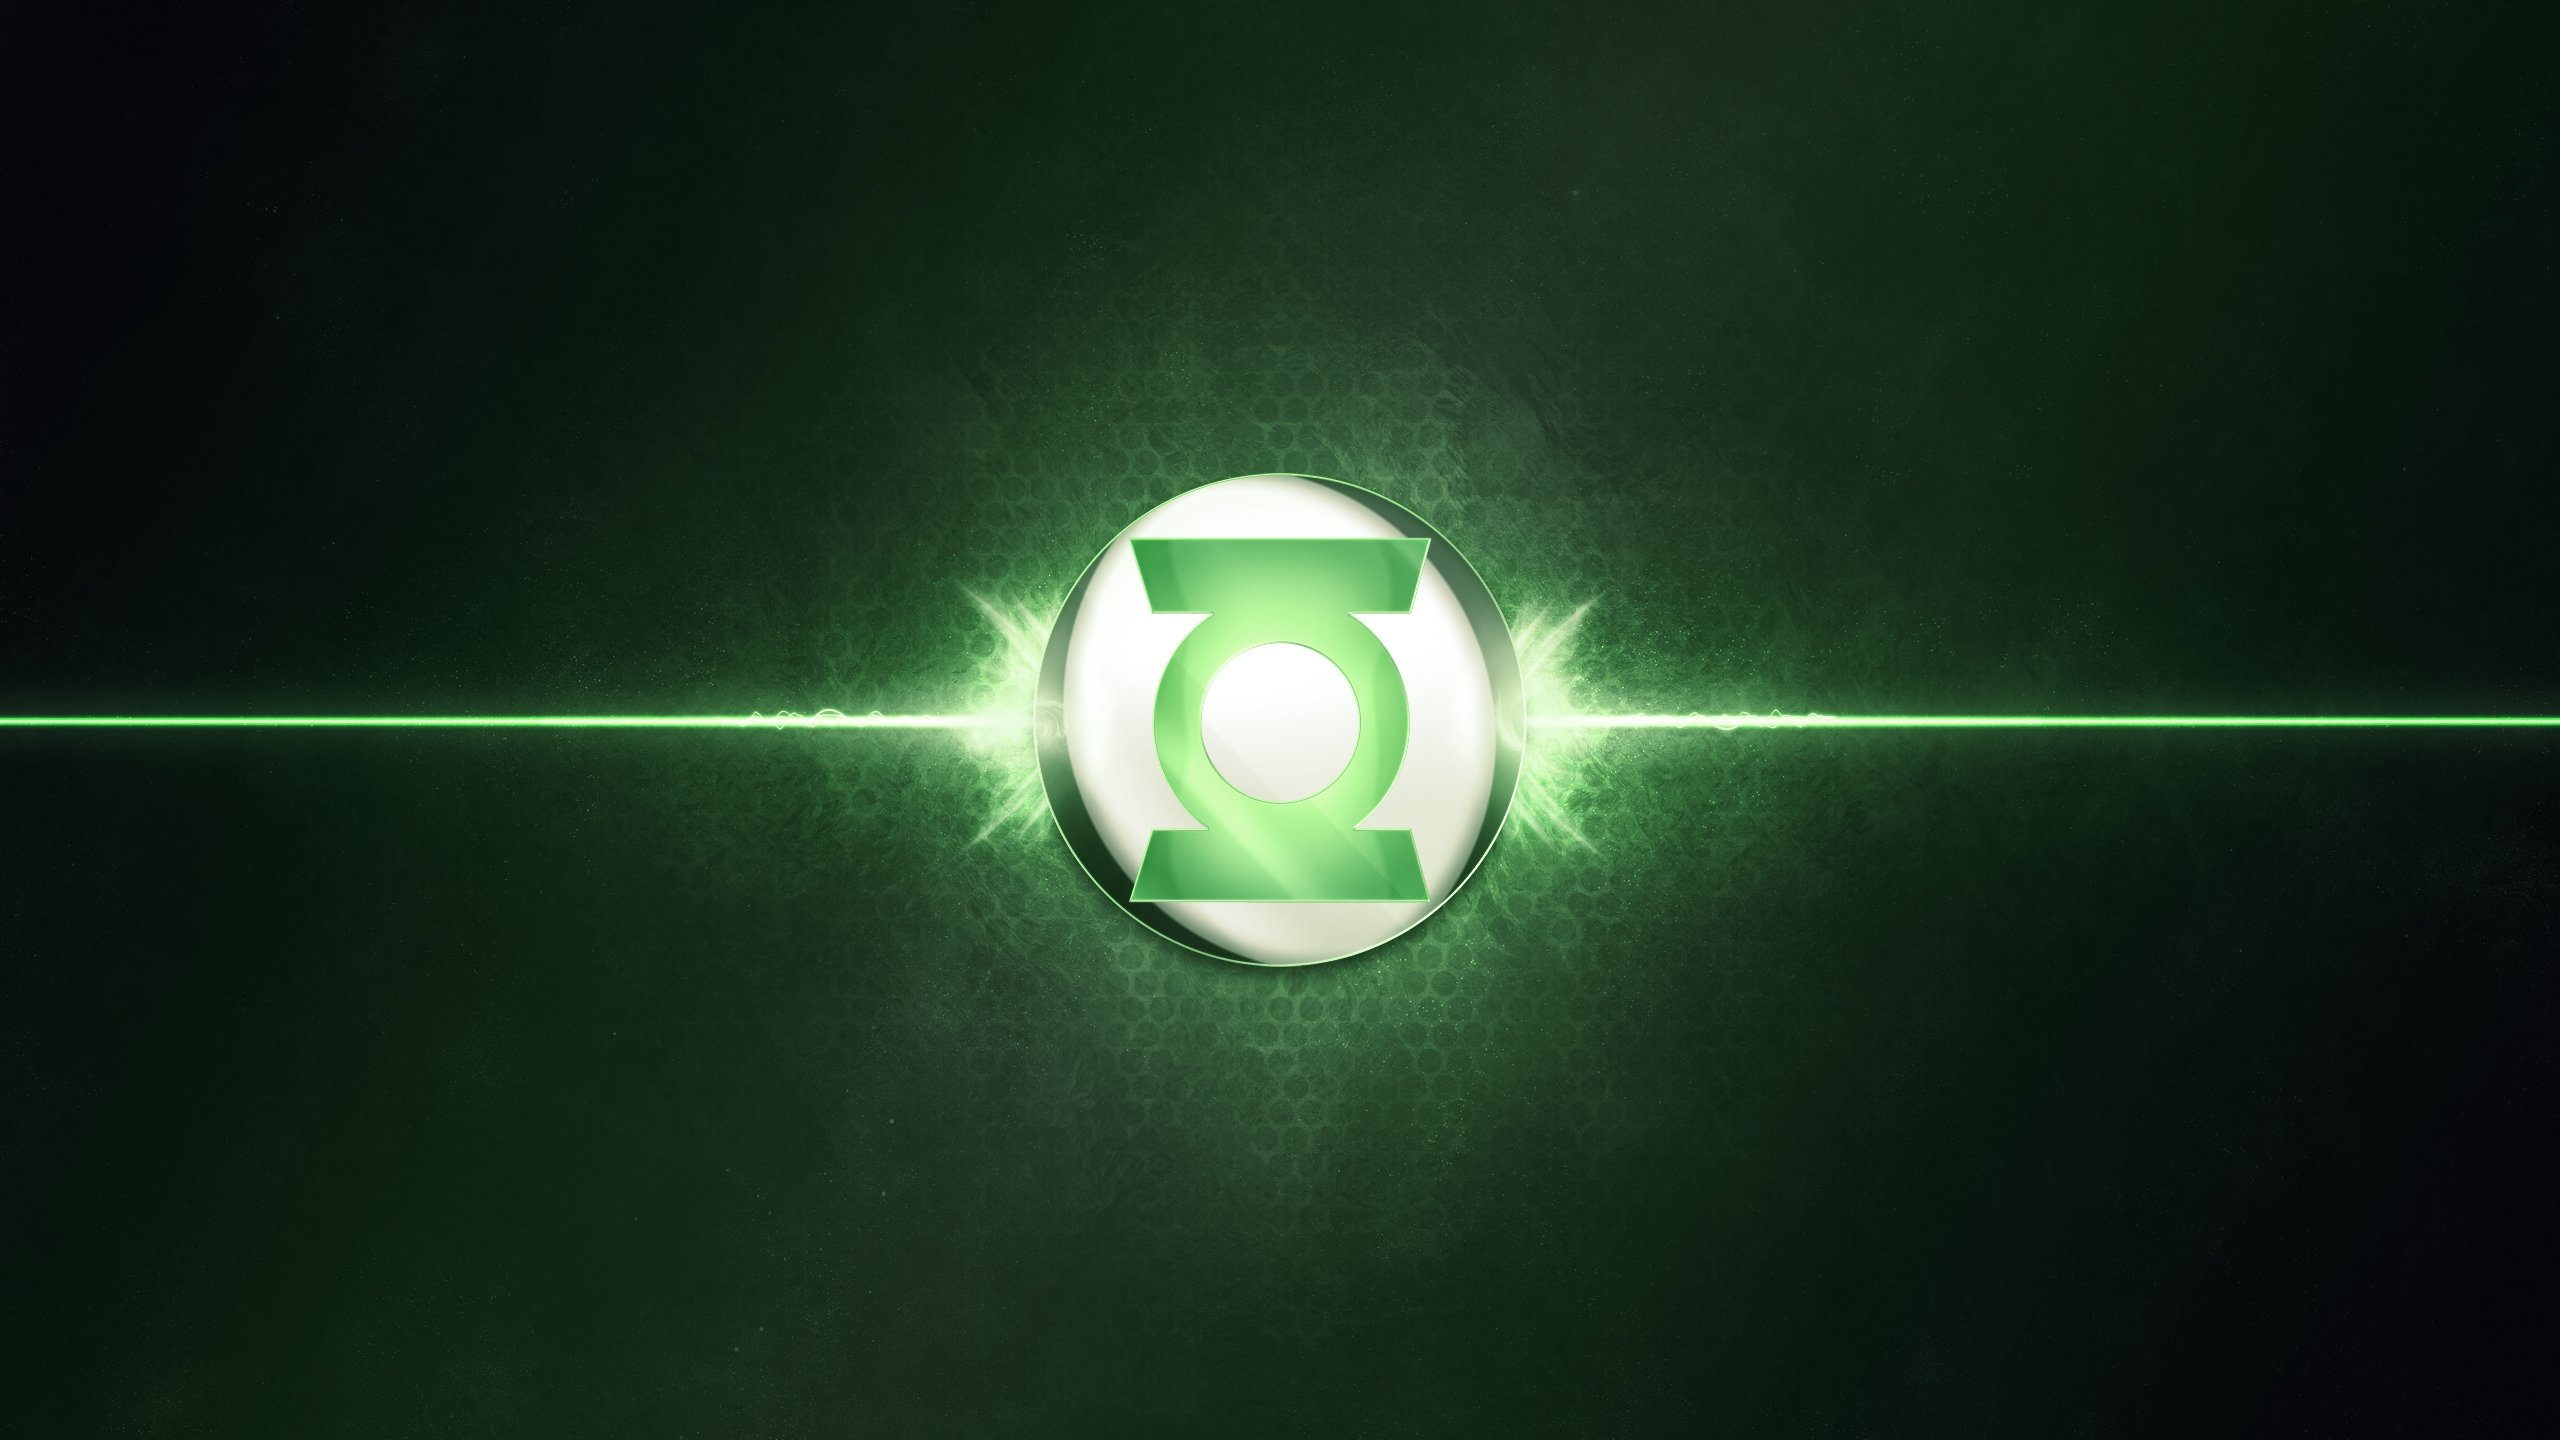 Best Green Lantern Corps wallpaper ID:277374 for High Resolution hd 2560x1440 desktop